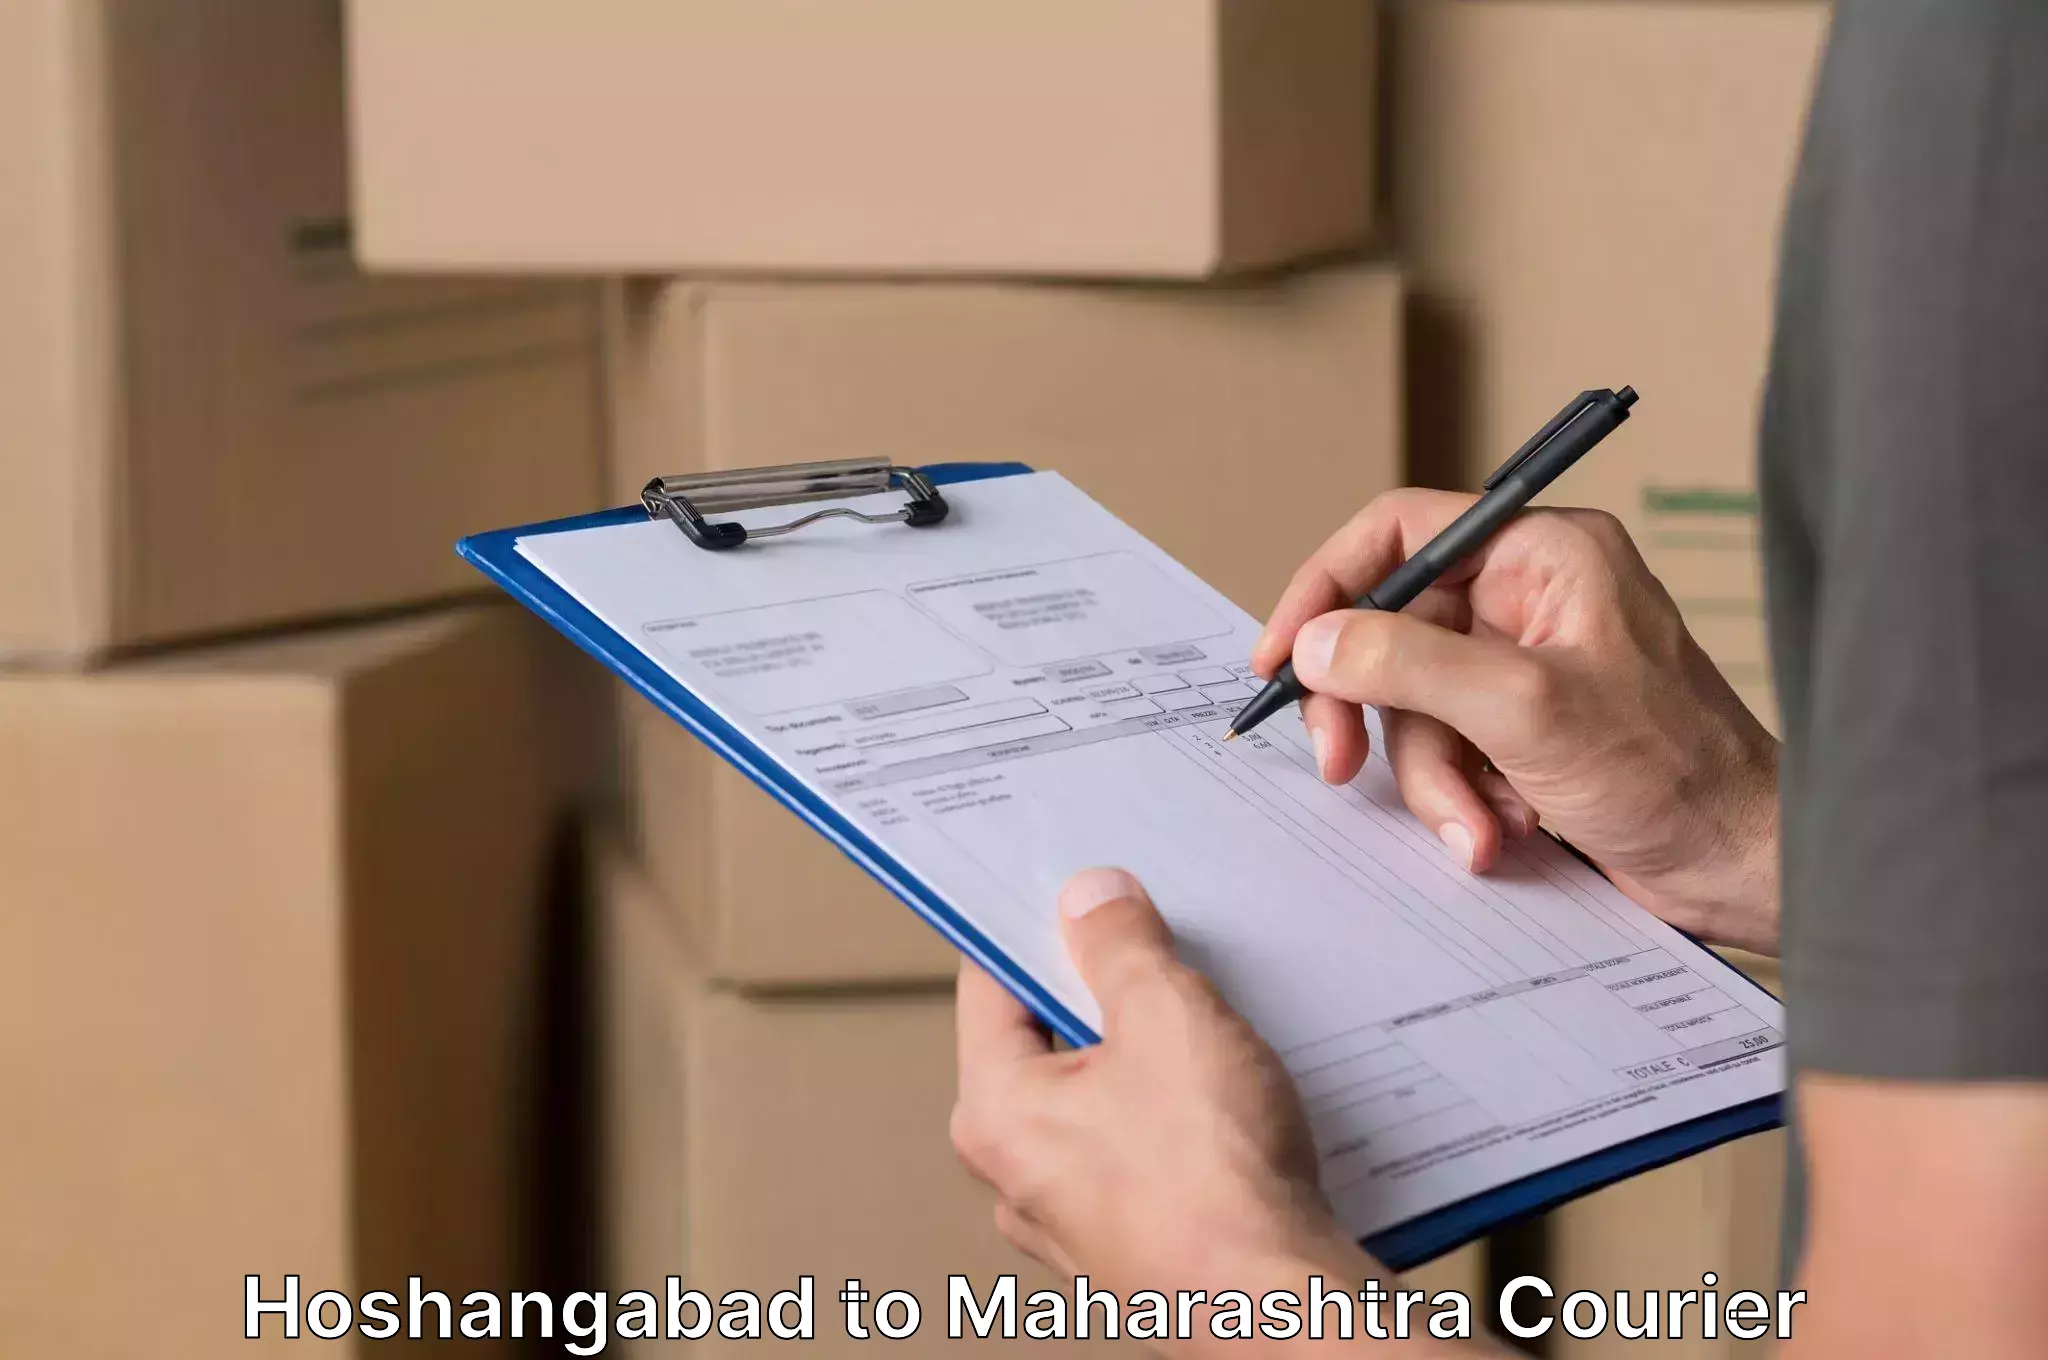 Household moving experts Hoshangabad to Brahmapuri